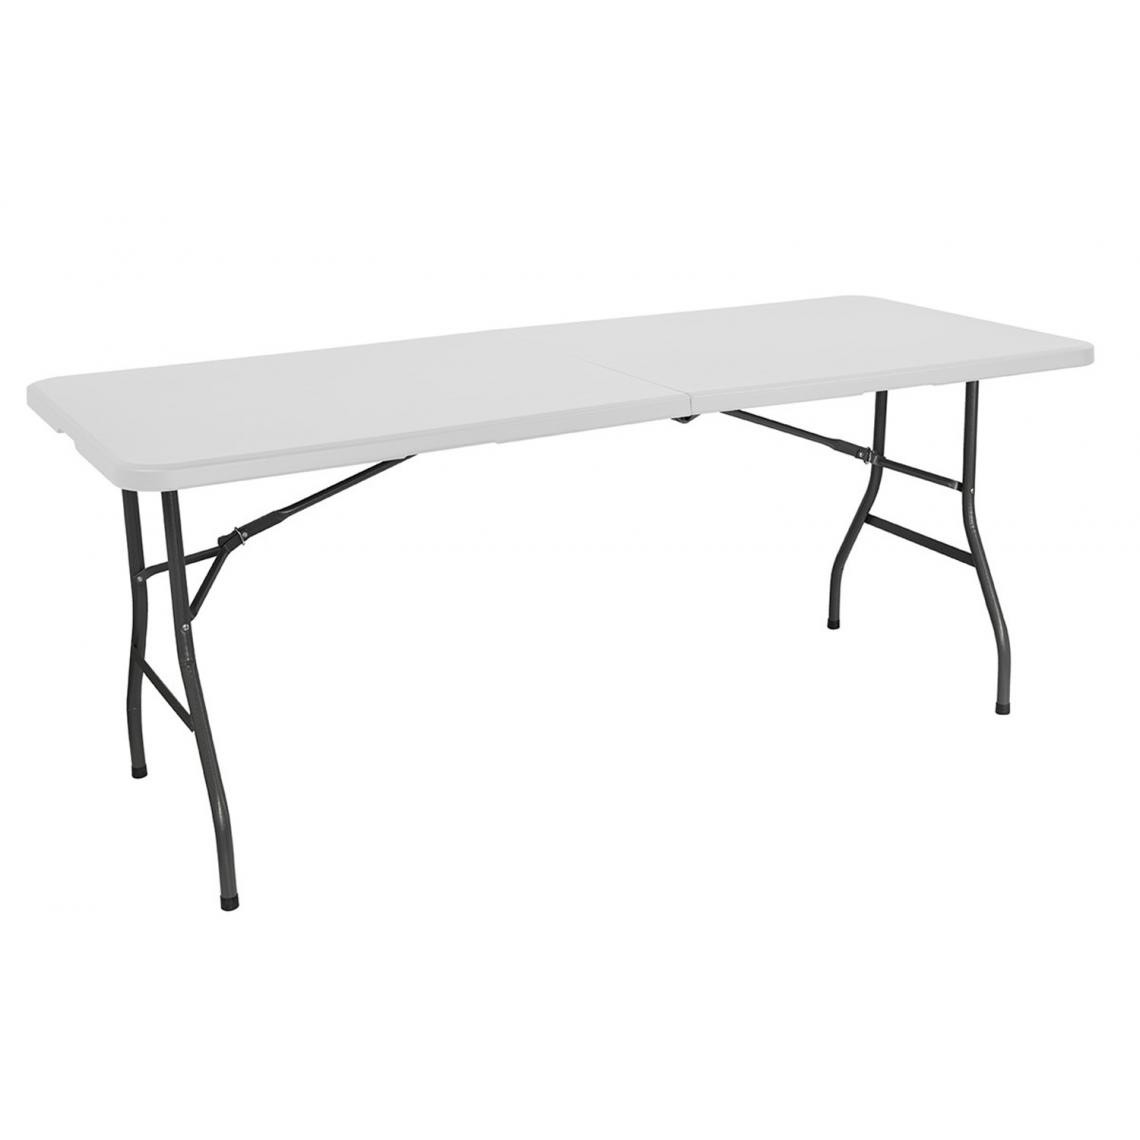 Pegane - Table pliante réctangulaire en Résine coloris Blanc- Longueur 180 x Largeur 74 x Hauteur 74 cm - Tables à manger